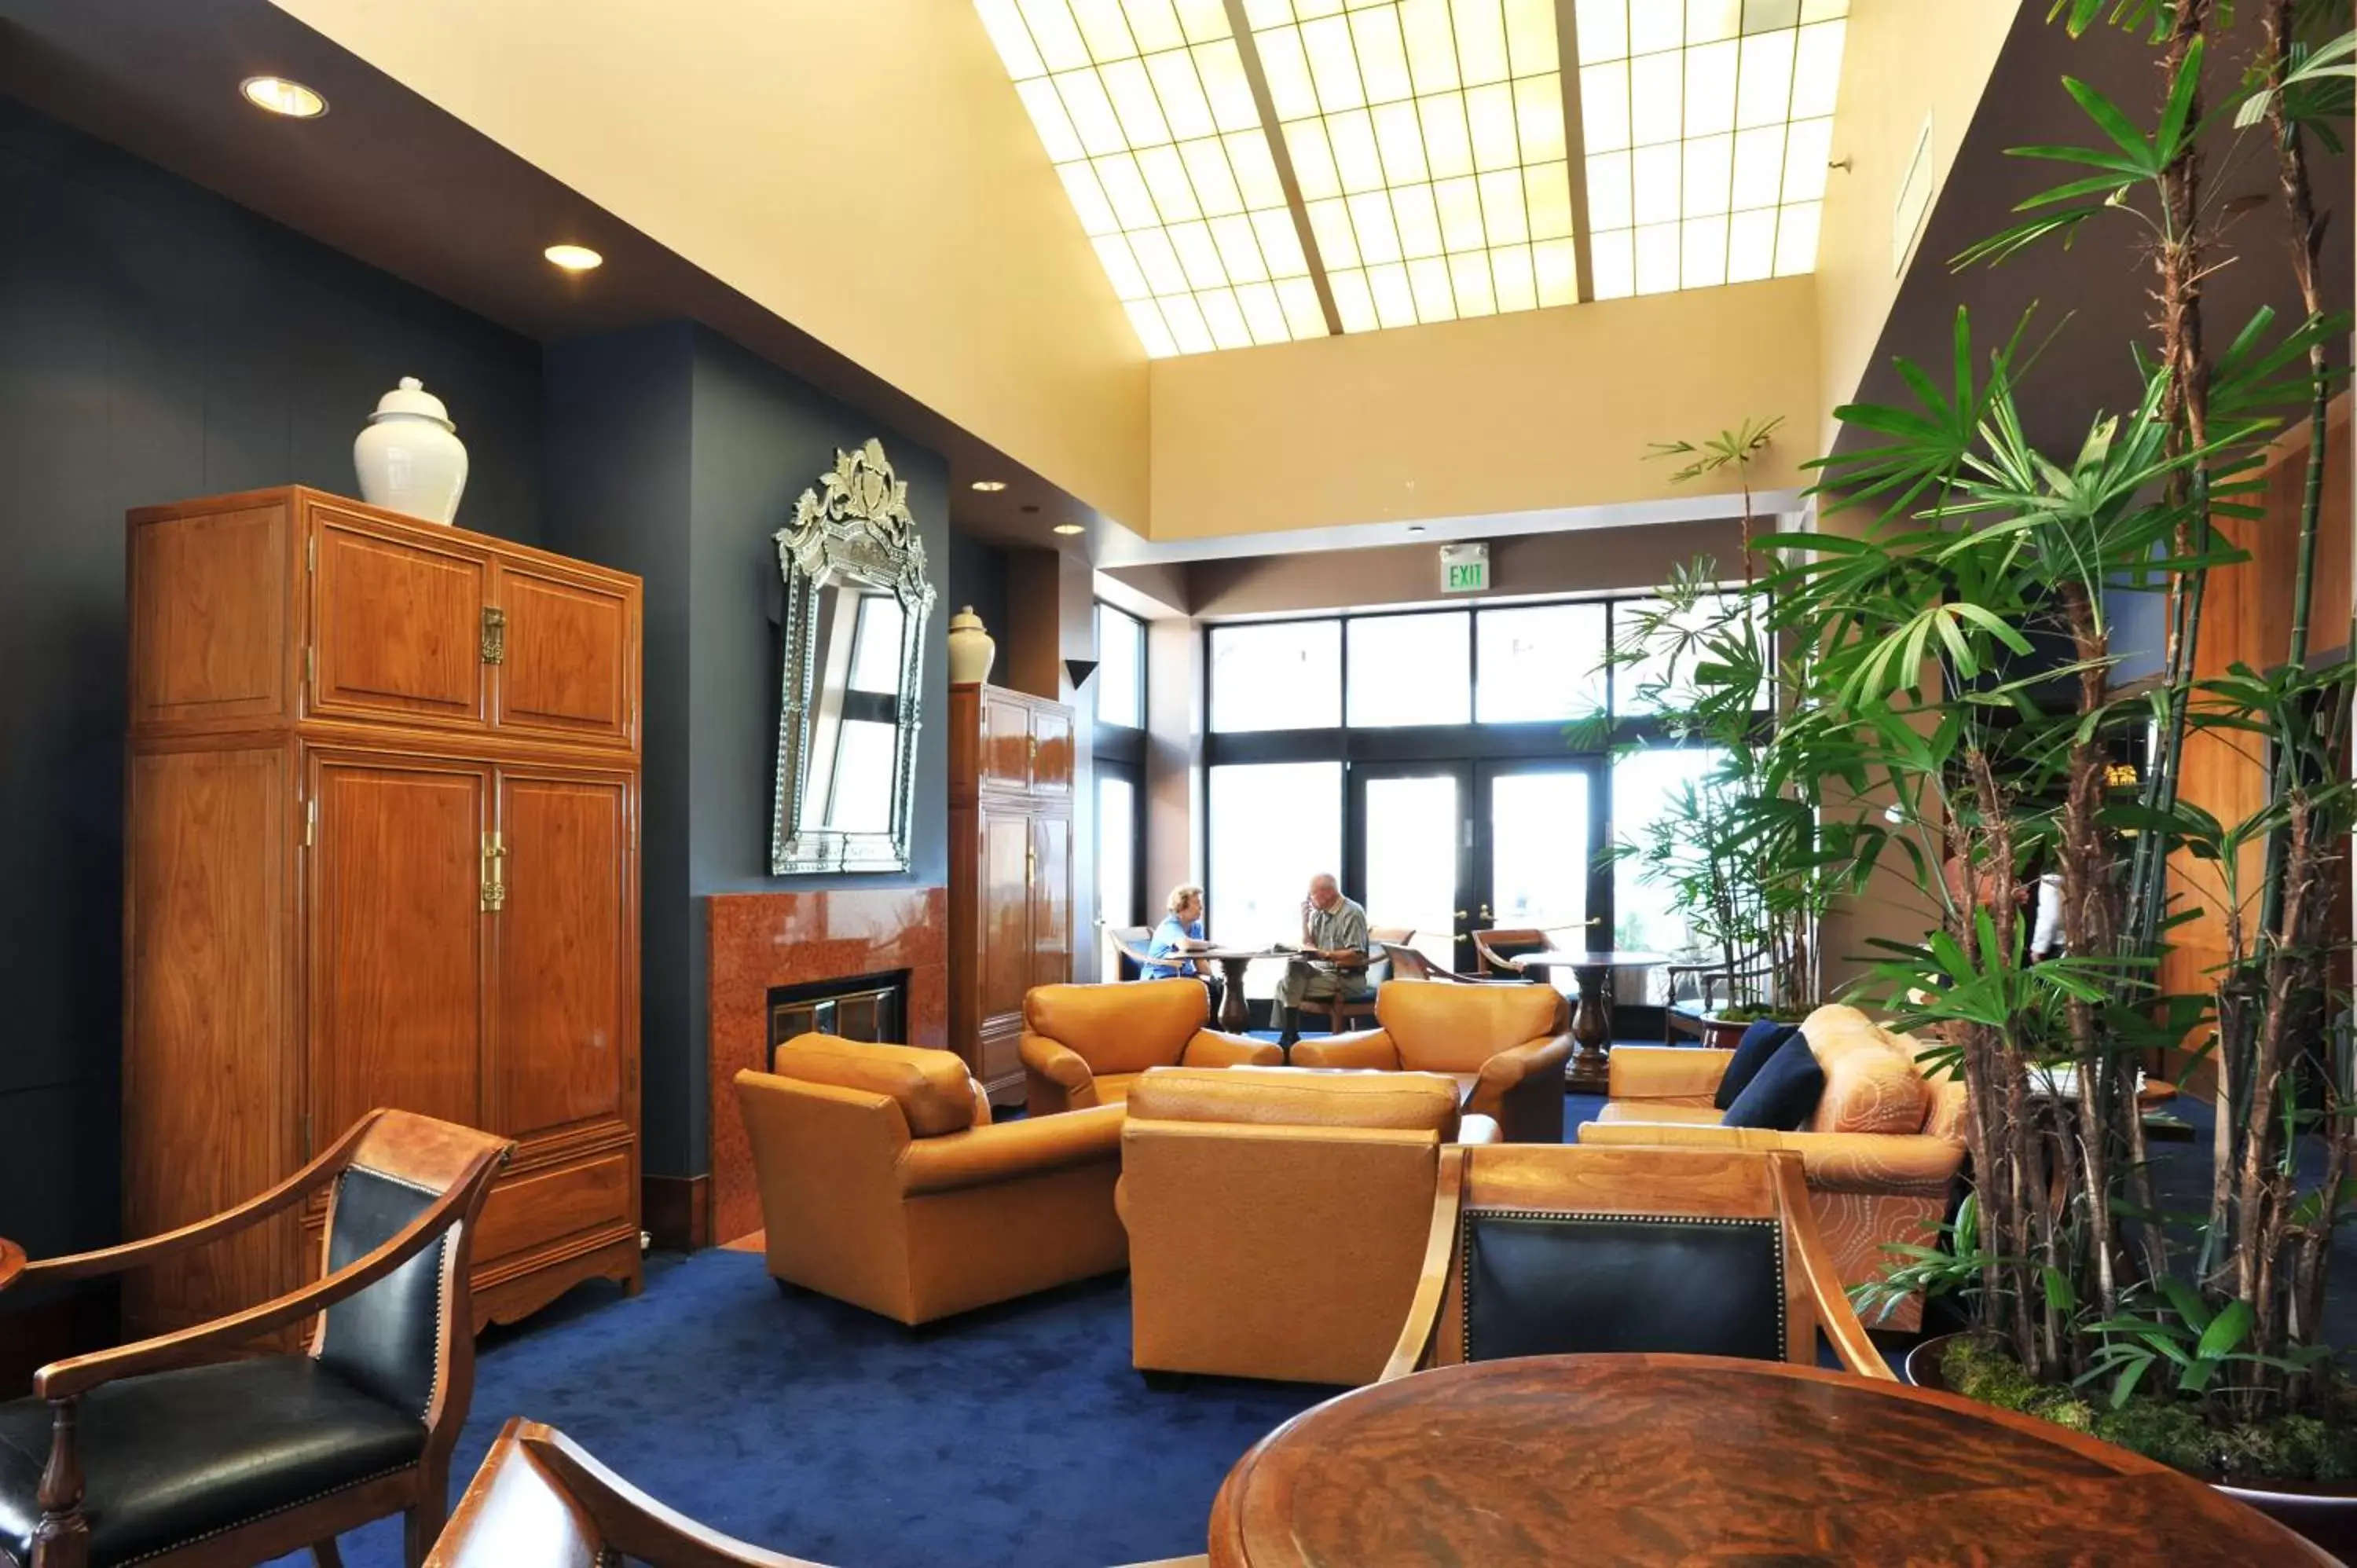 Lobby or reception in Club Donatello